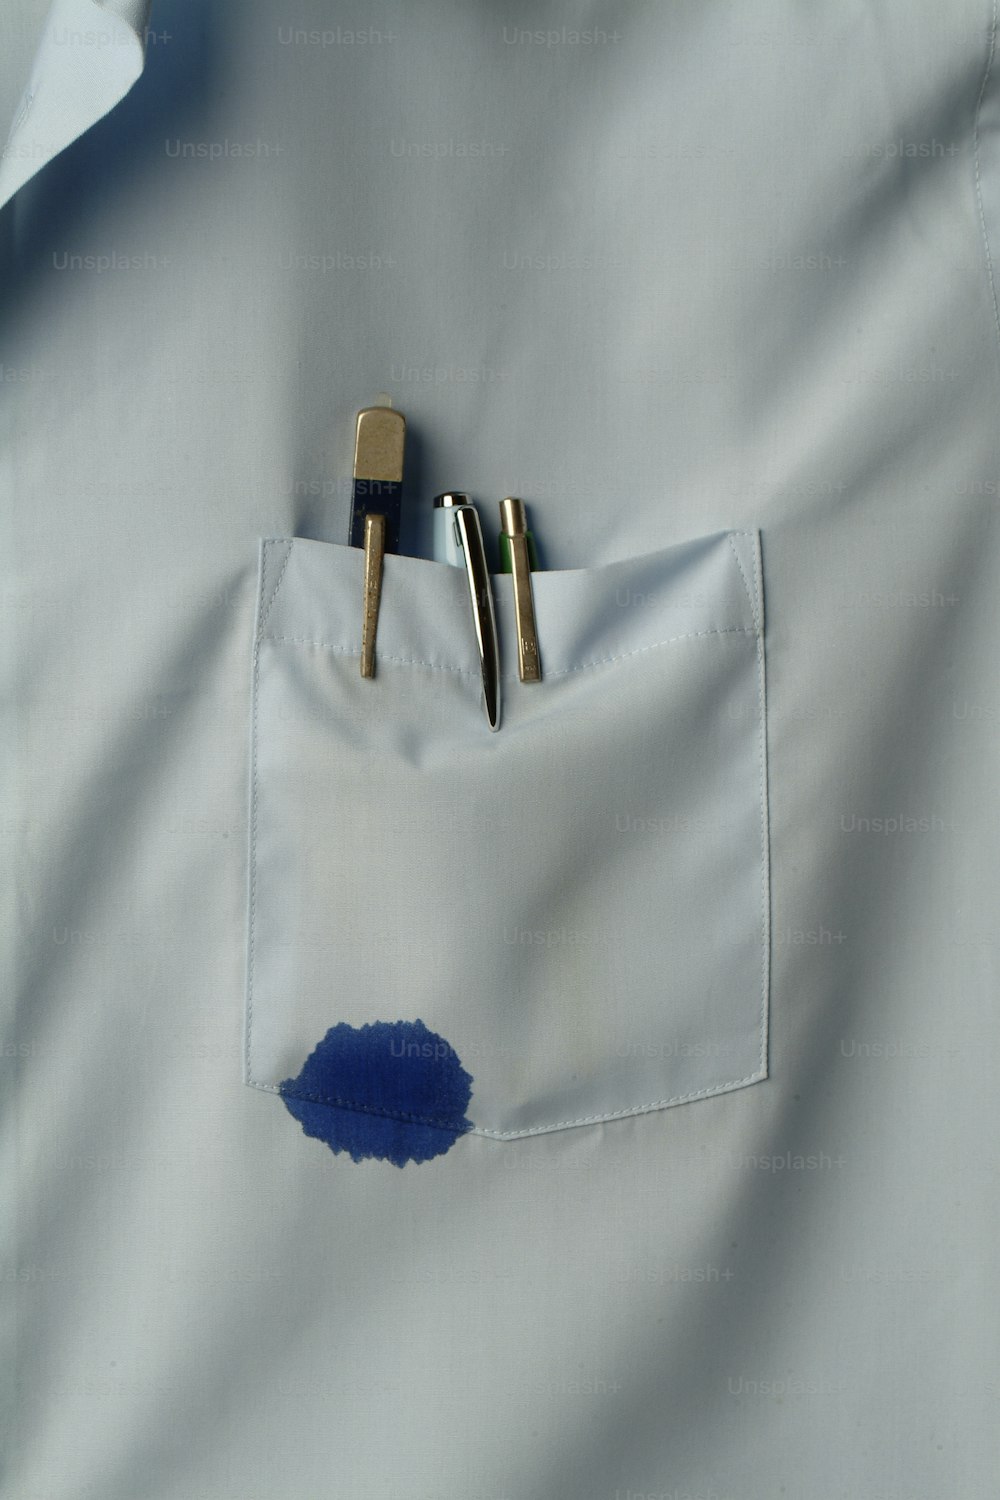 Vue rapprochée d’une poche de chemise qui contient plusieurs stylos, dont l’un fuit de l’encre bleue, Californie, années 1970. (Photo de Tom Kelley/Getty Images)